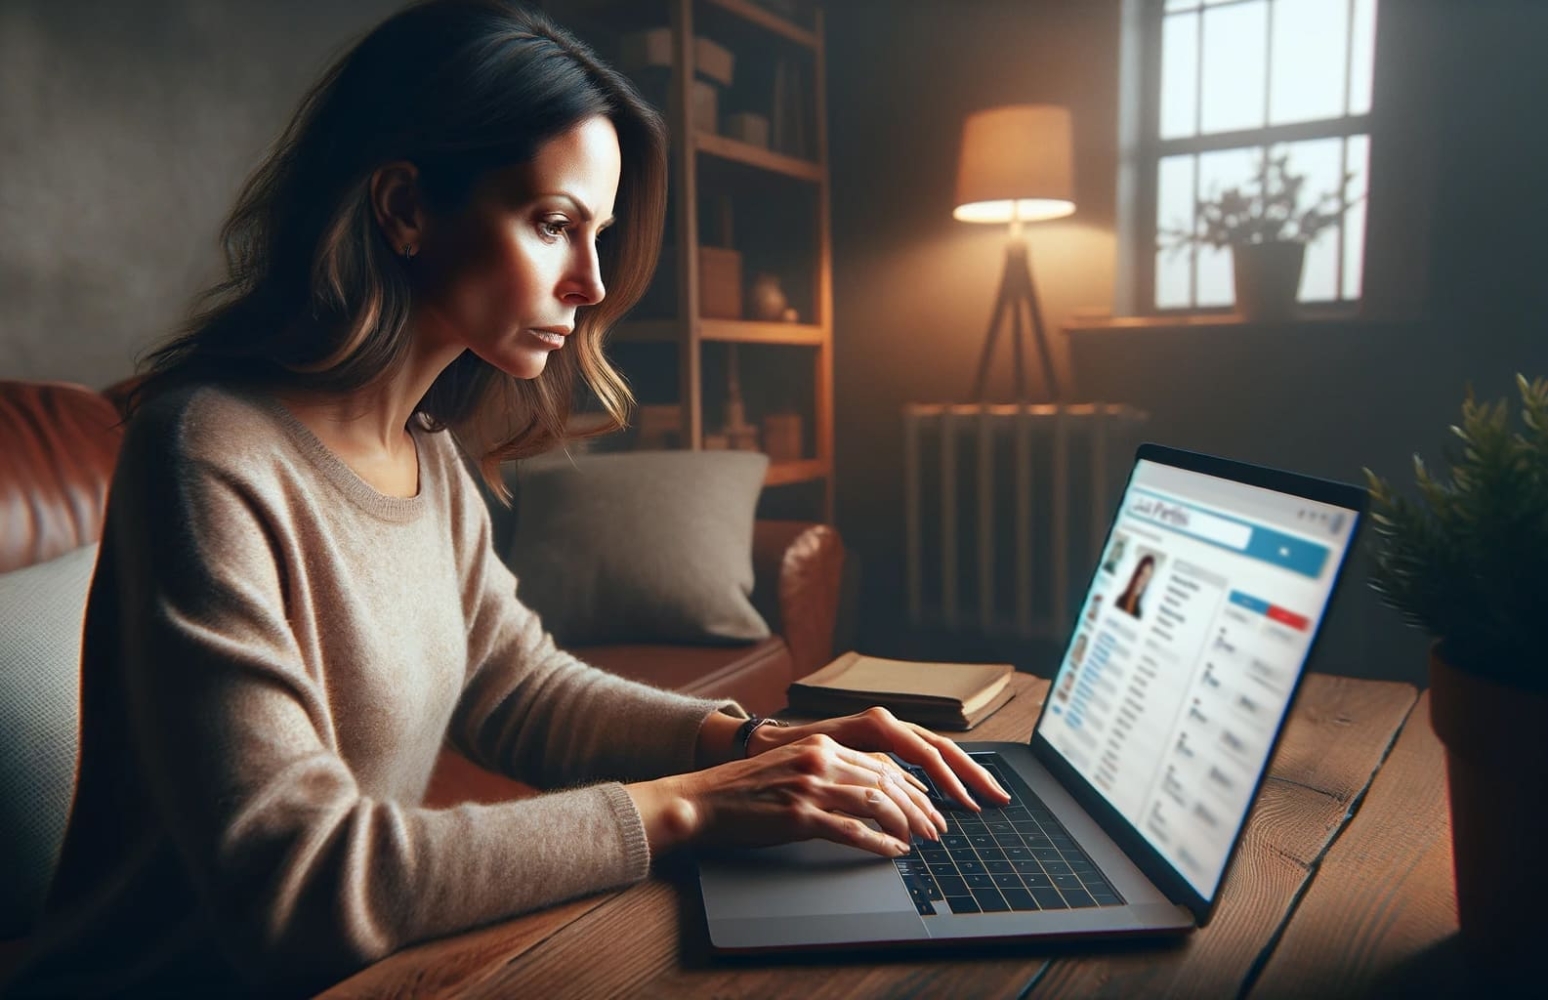 Una donna seduta alla sua scrivania in un ambiente domestico, concentrata sui profili degli utenti sul suo computer portatile, guarda lo schermo dove è aperta un'applicazione mobile di ricerca persone